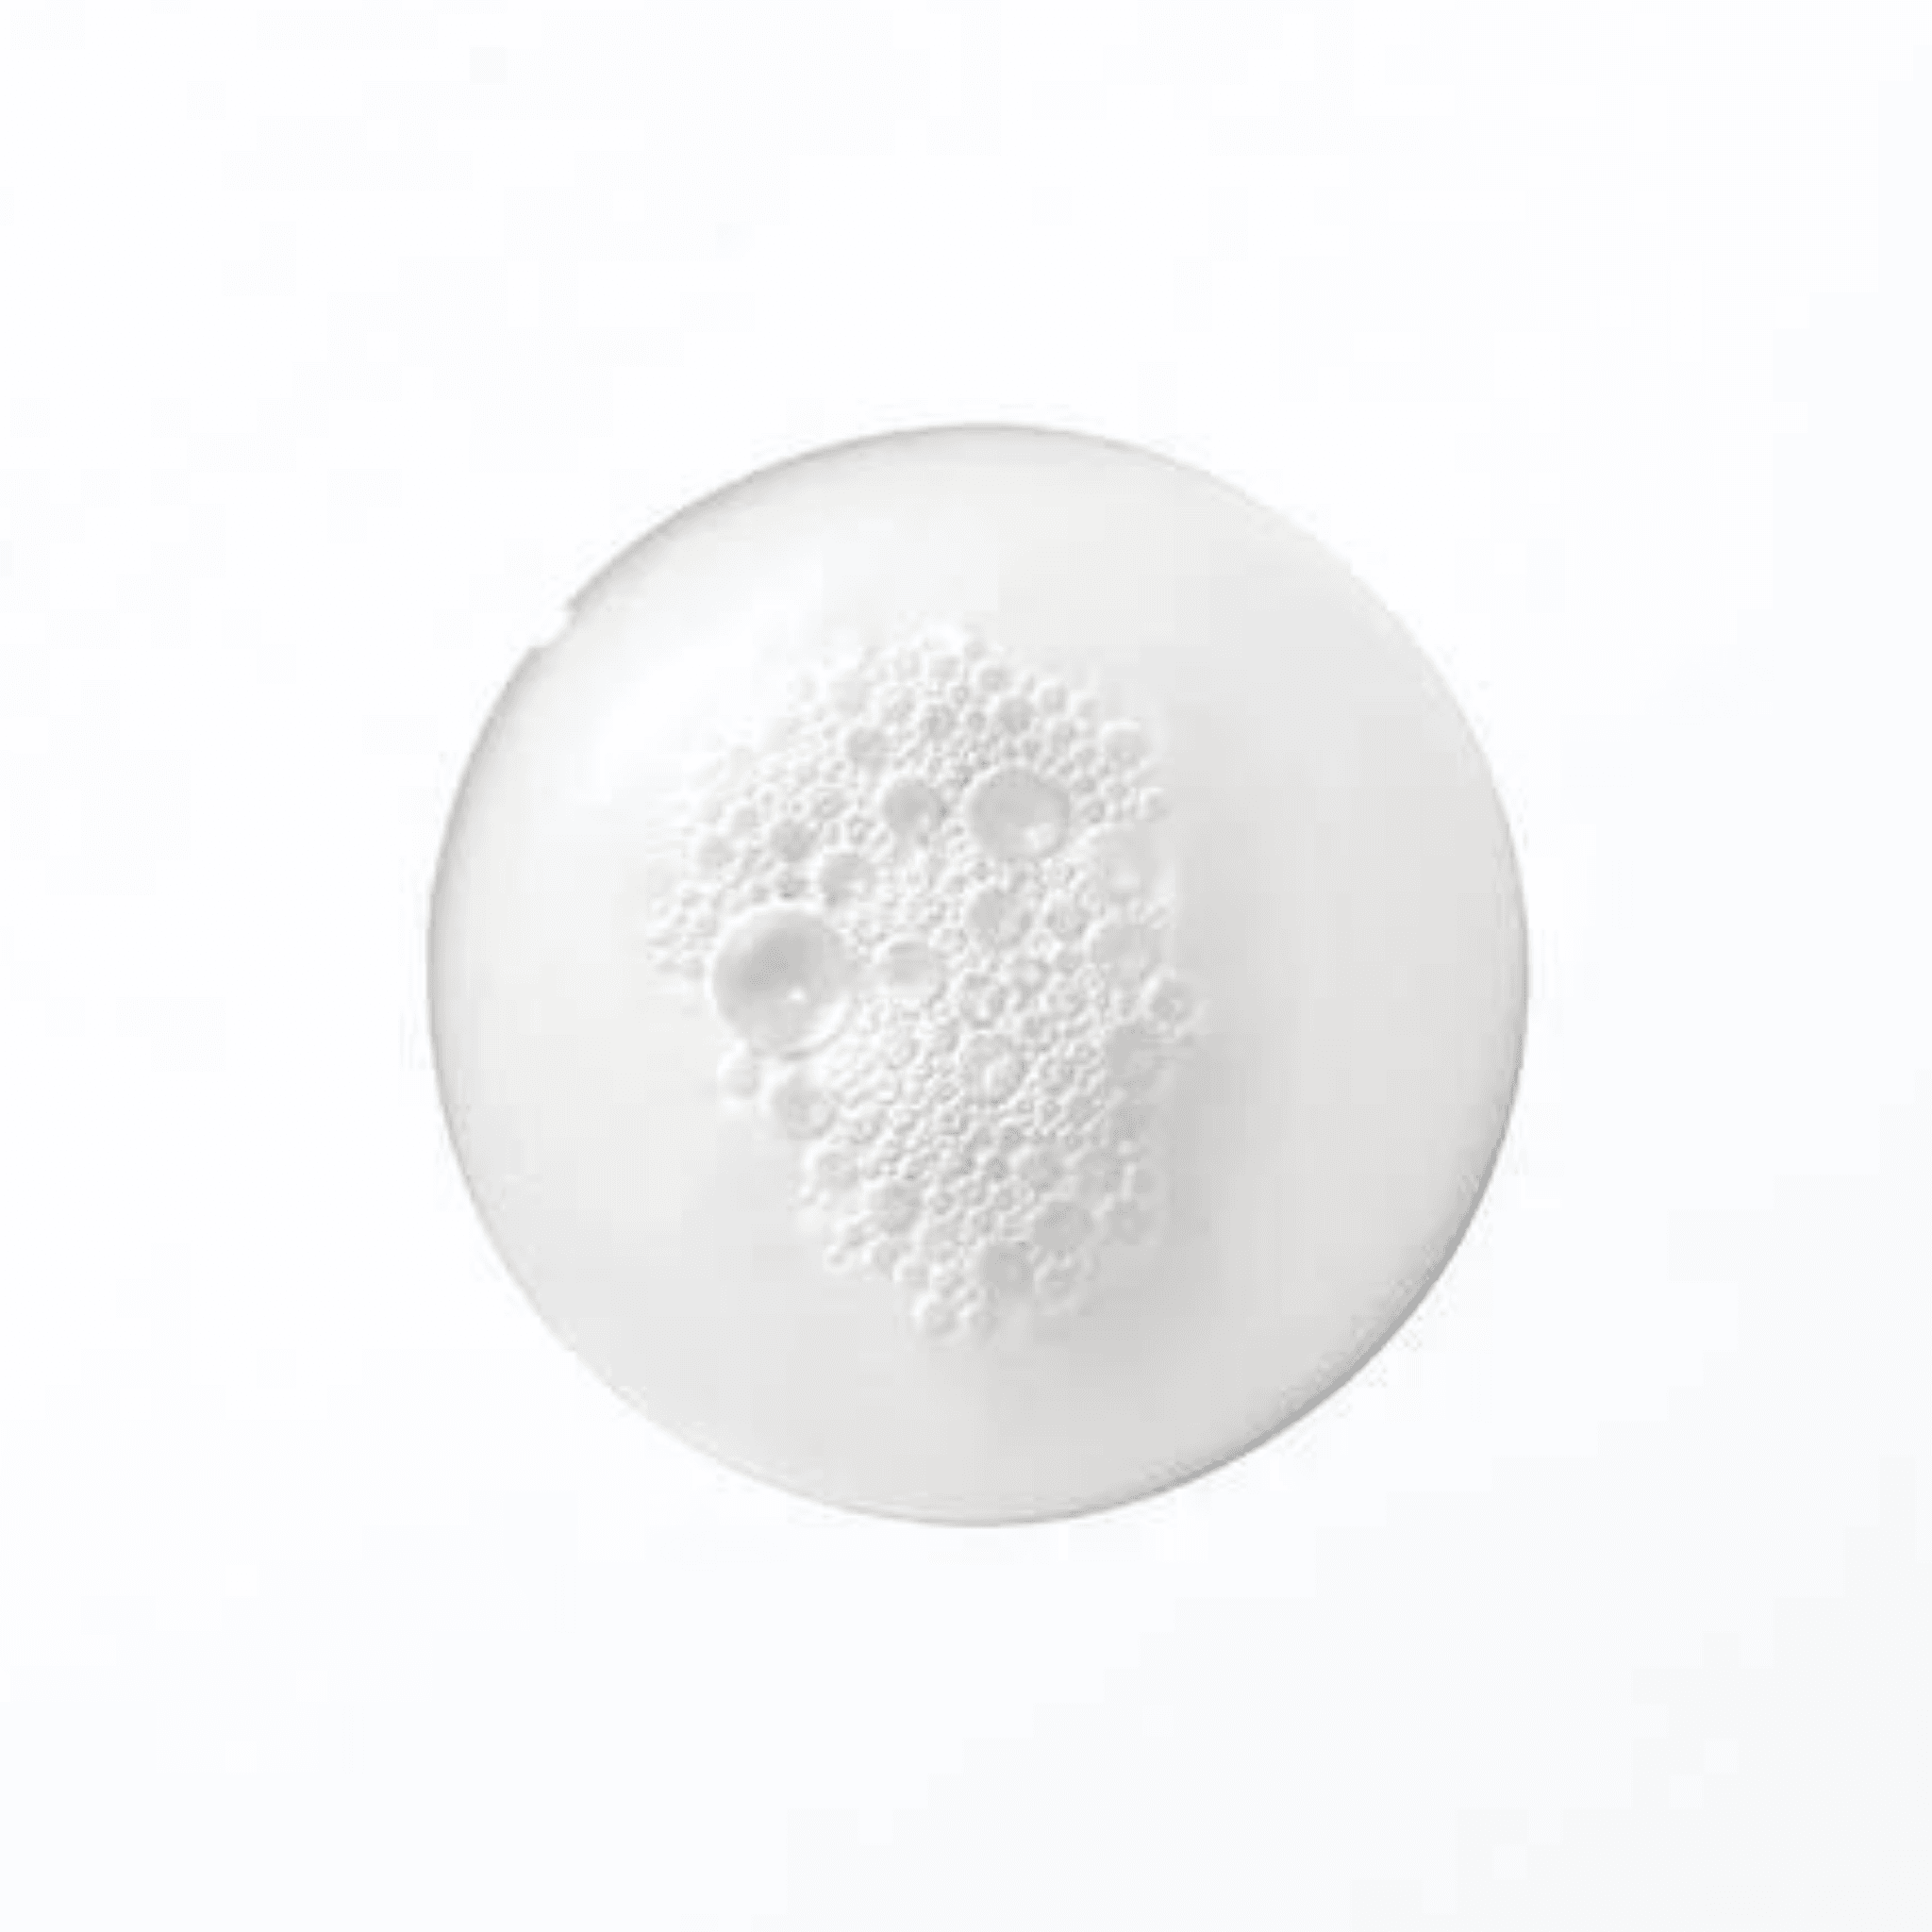 Kérastase. Spécifique Shampoing Bain Divalent - 250 ml - Concept C. Shop